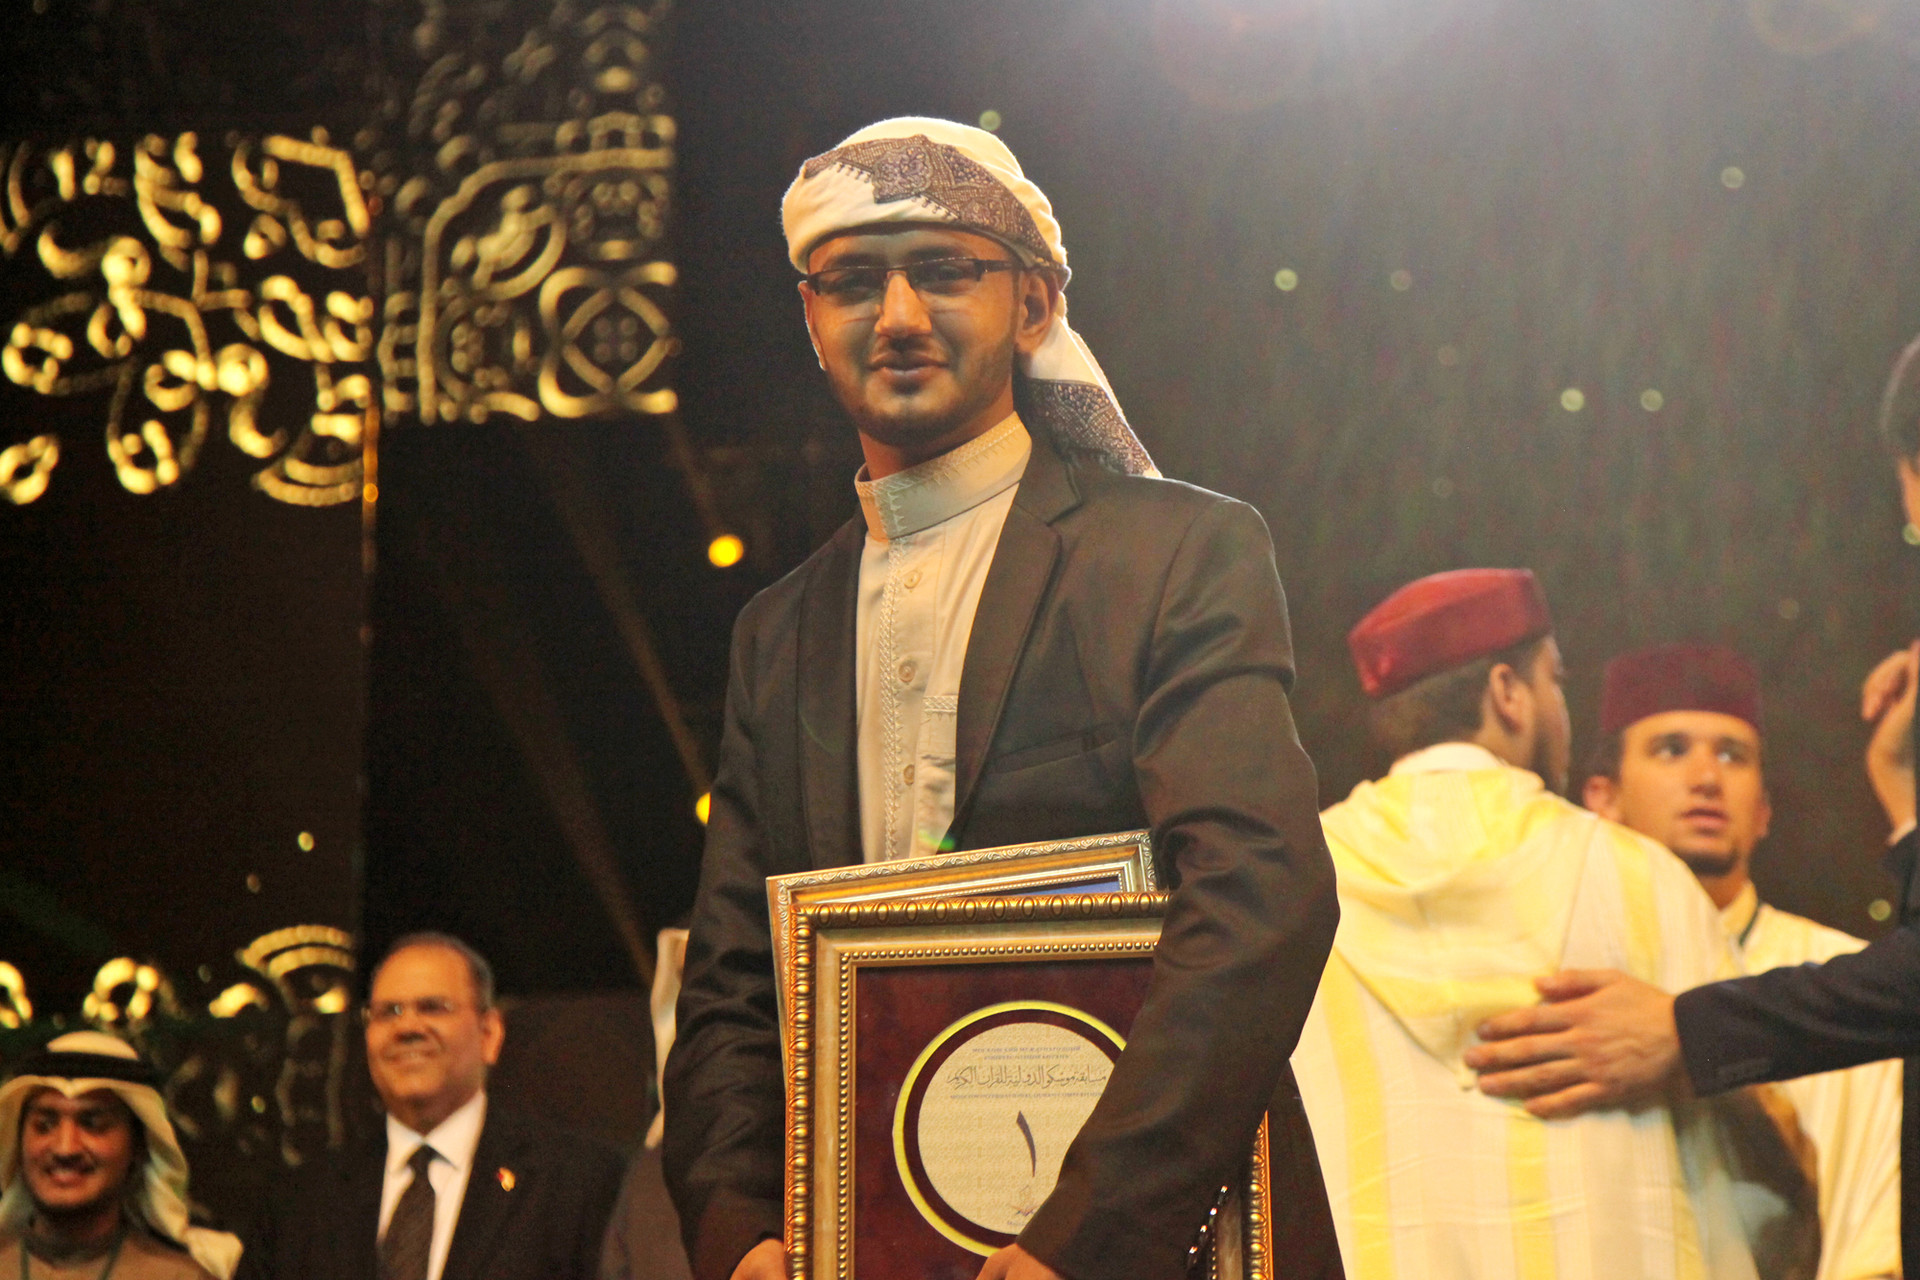 Juara pertama MHQ Internasional Moskow Al-Awsagi Abdulhakim dari Yaman seusai menerima penghargaan pada Festival Alquran di Crocus City Hall, Moskow, Rusia, Minggu (21/10).